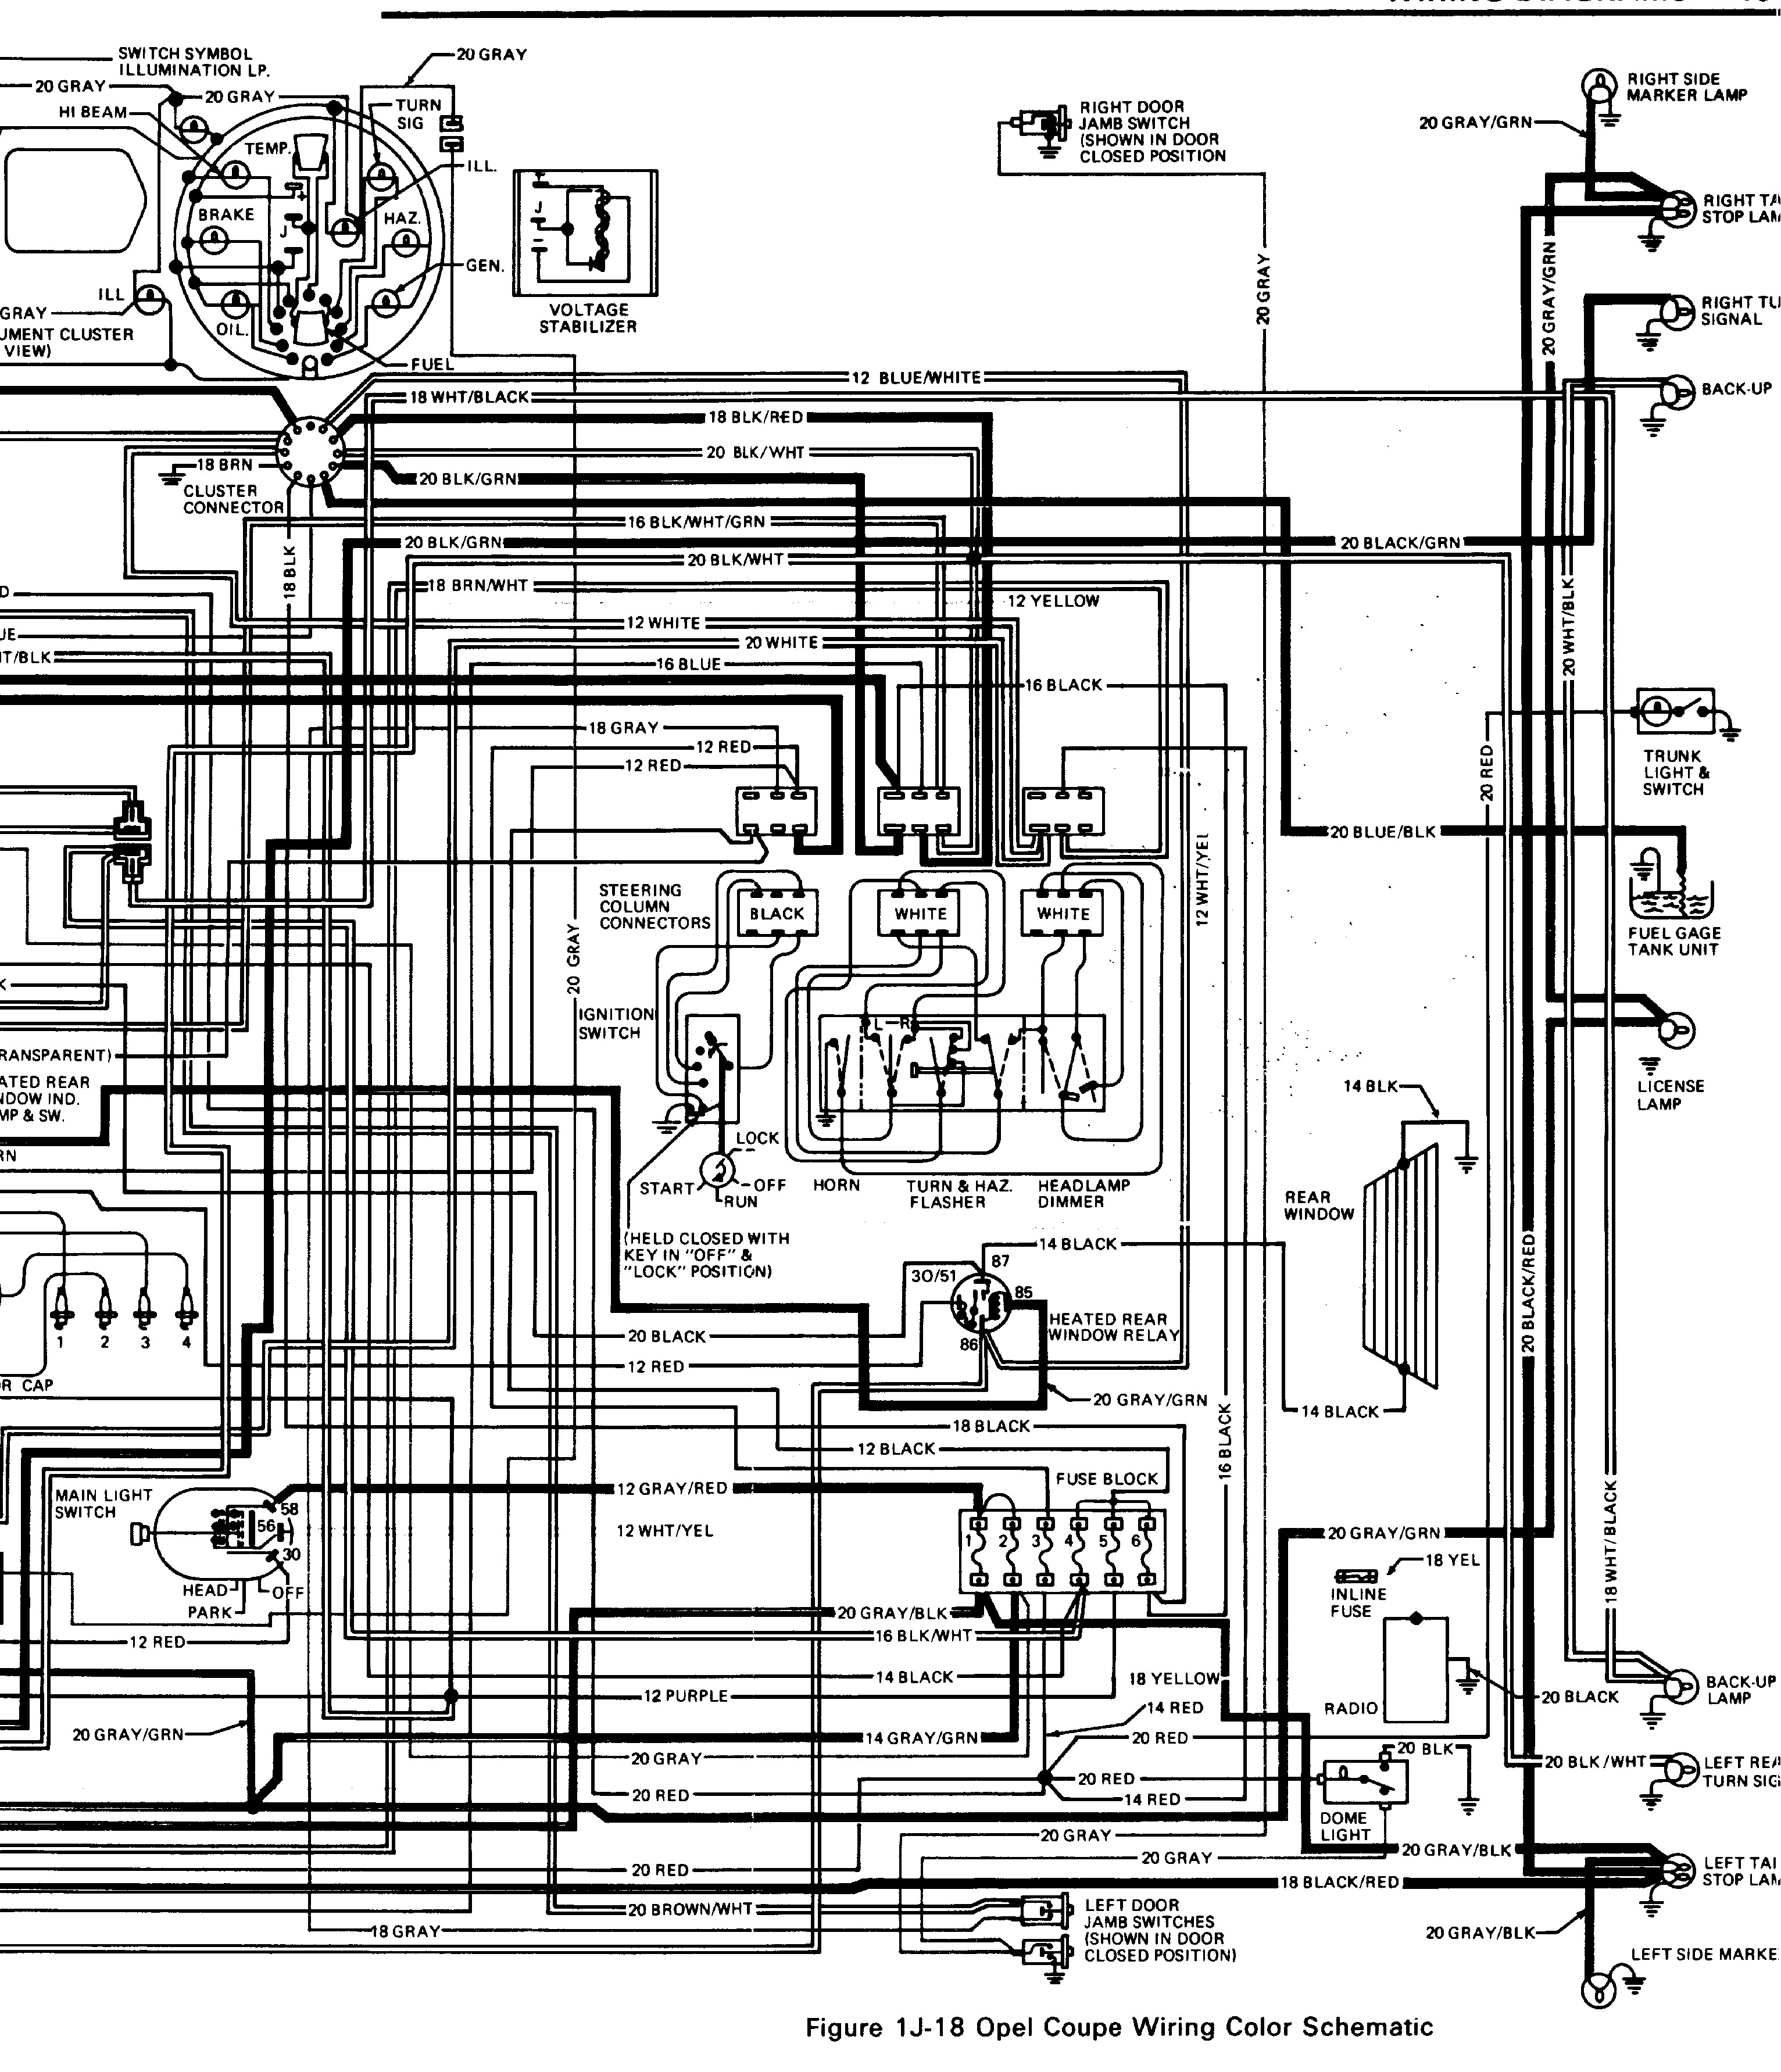 Vivaro Van Wiring Diagram - Wiring Diagram vauxhall frontera wiring diagram 